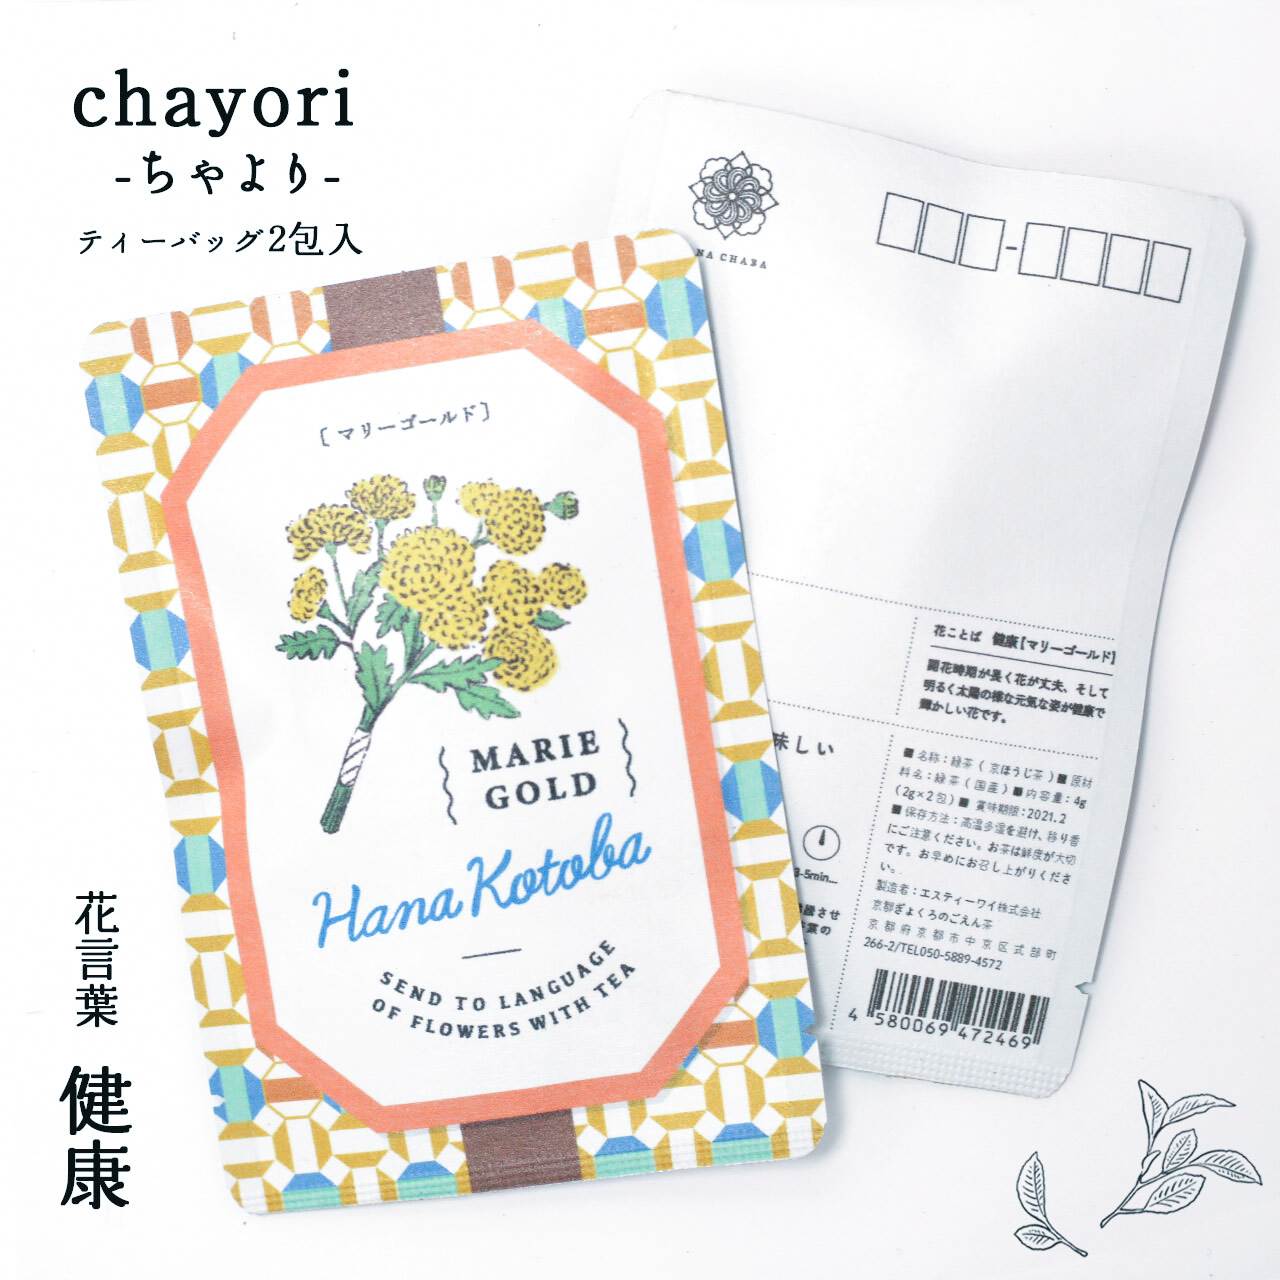 マリーゴールド Chayori 花言葉シリーズ ほうじ茶ティーバッグ2包入 お茶入りポストカード 京都ぎょくろのごえん茶 京都から おいしいたのしい お茶ギフトをお届けいたします